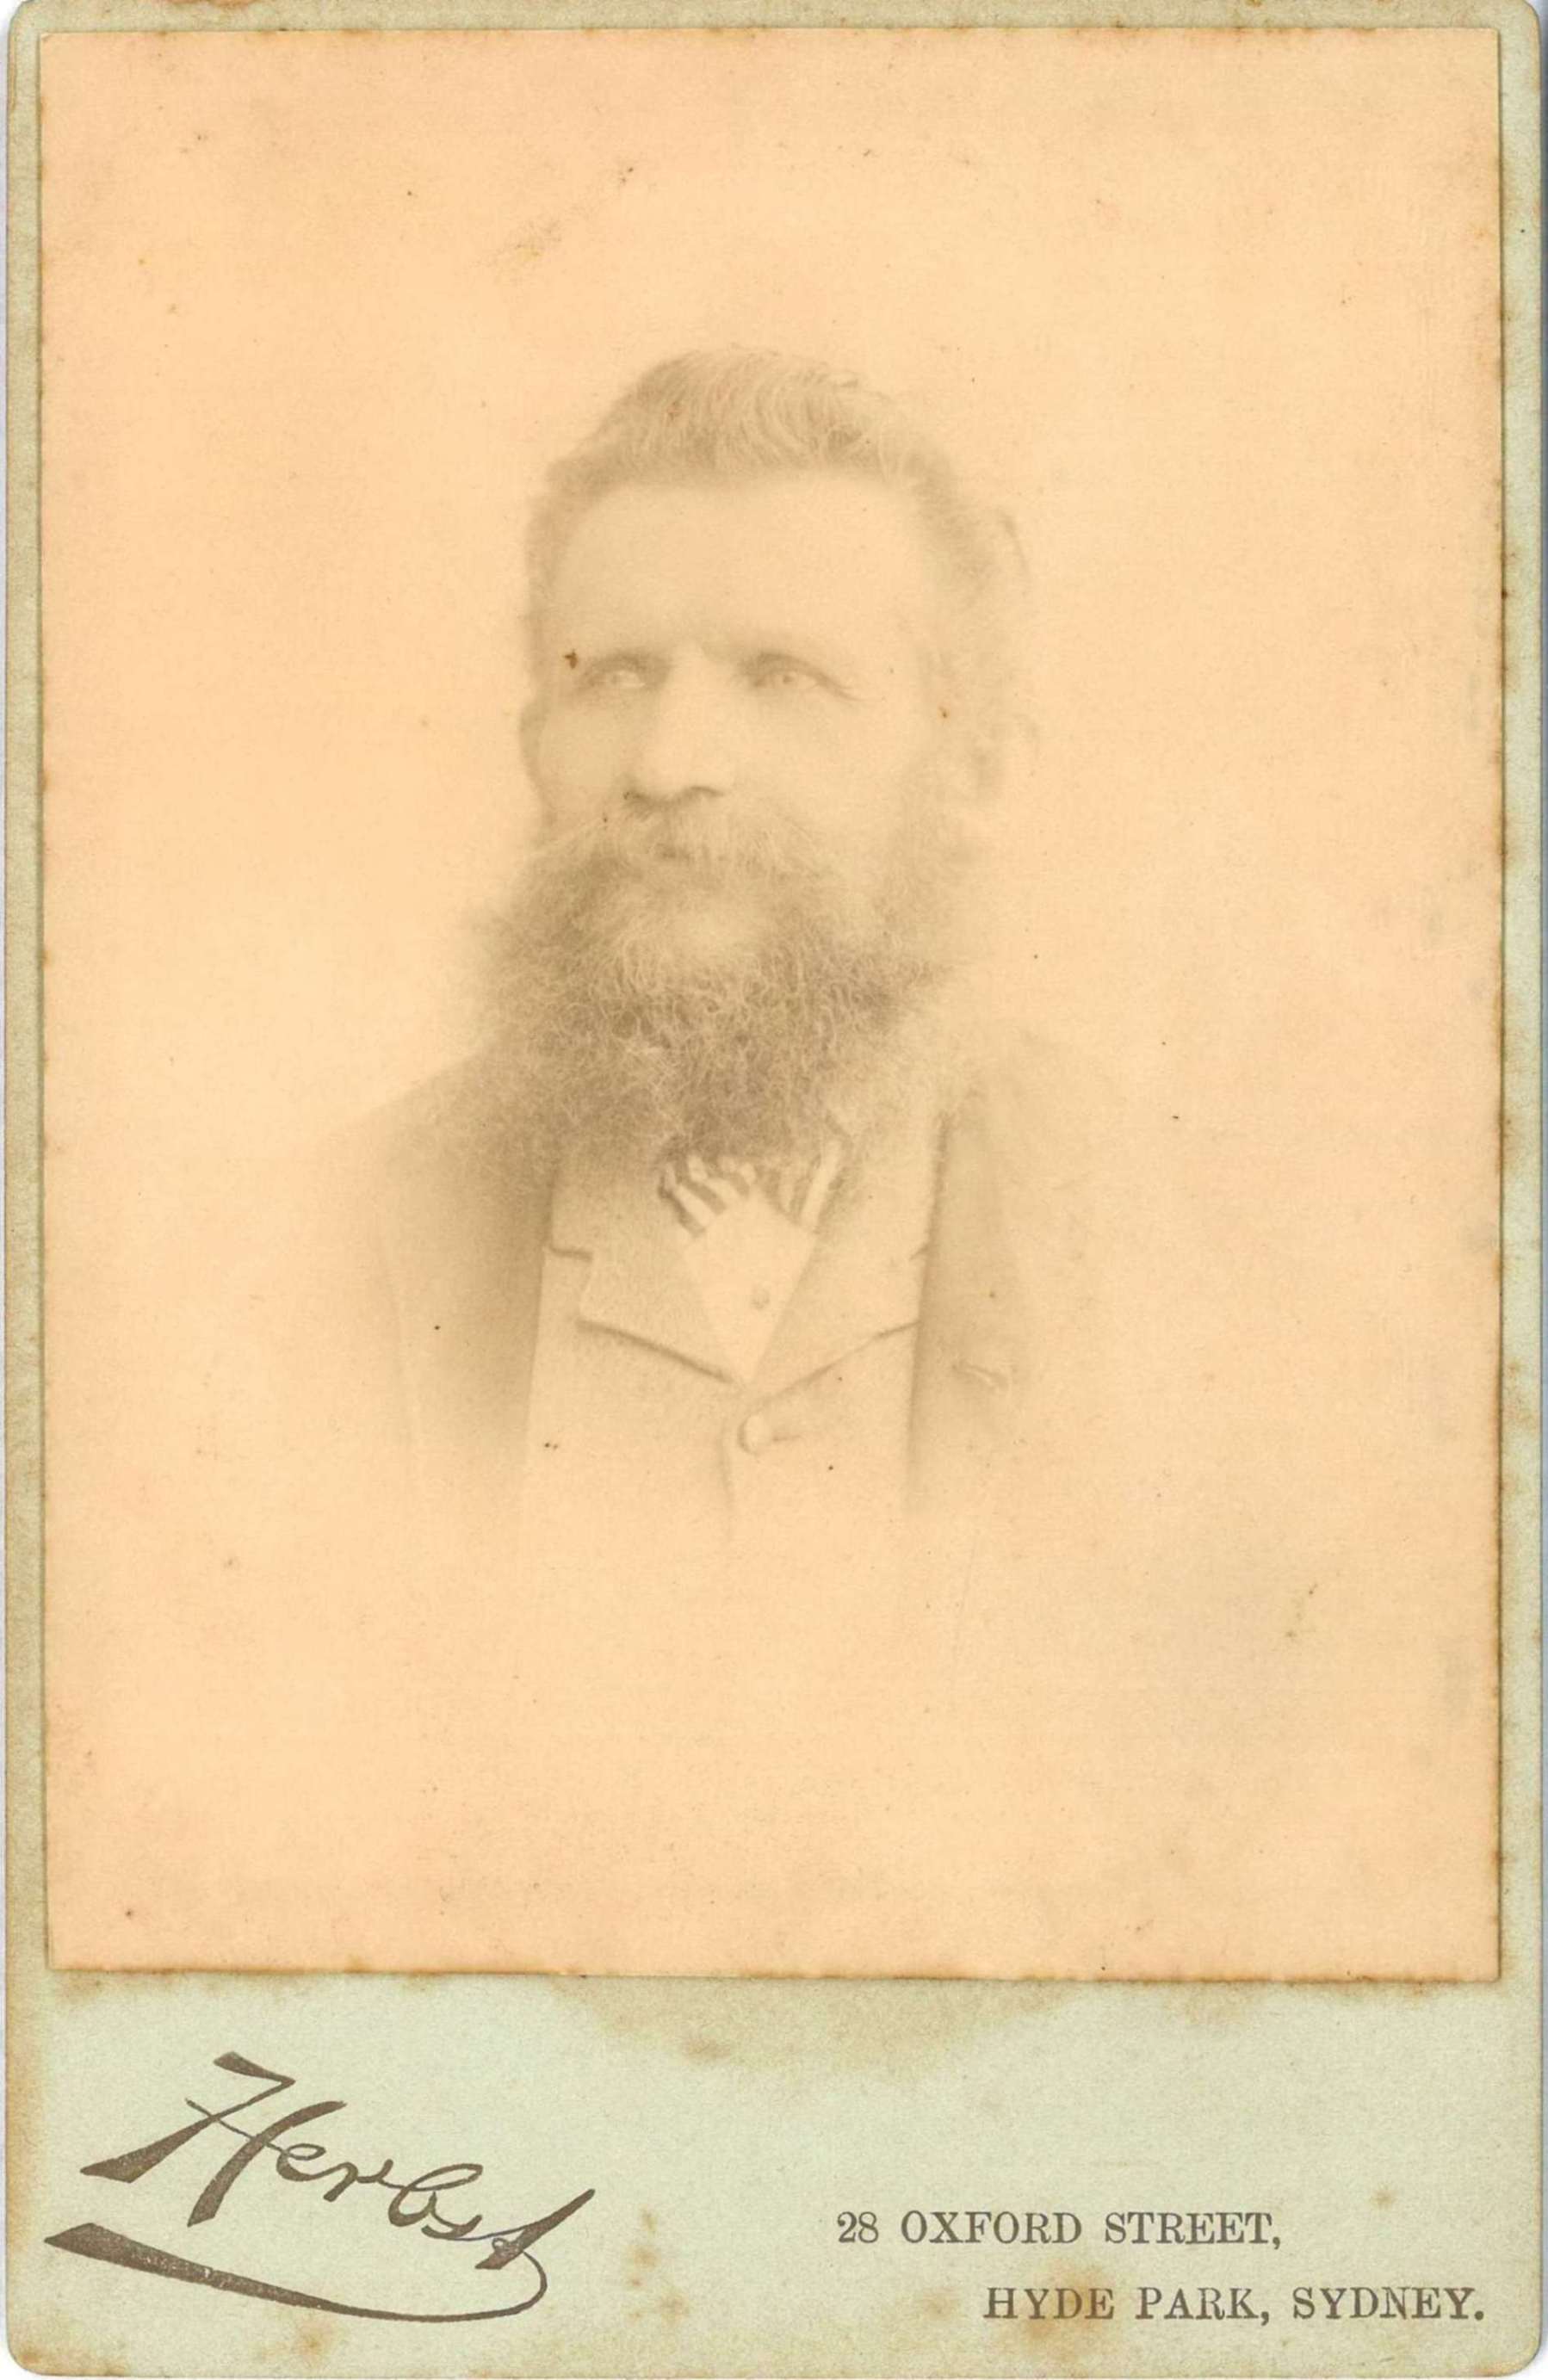 William Bauerlen, around 1900 / L. Herbst (photographer)